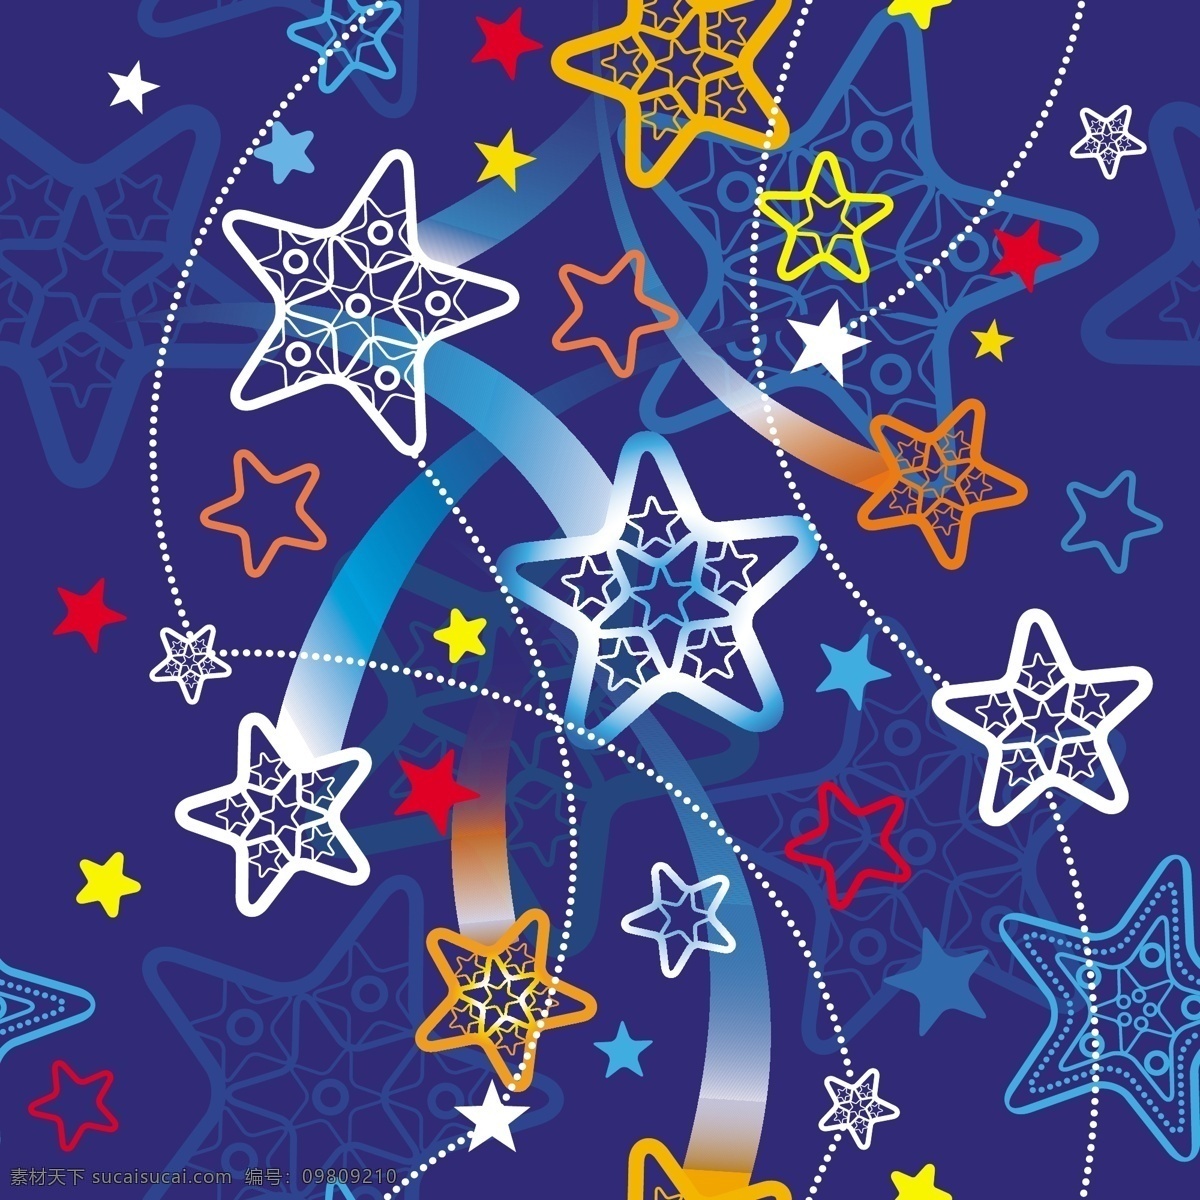 矢量 动感 星星 线条 炫丽 背景 插画背景 卡通 圣诞节图案 节日素材